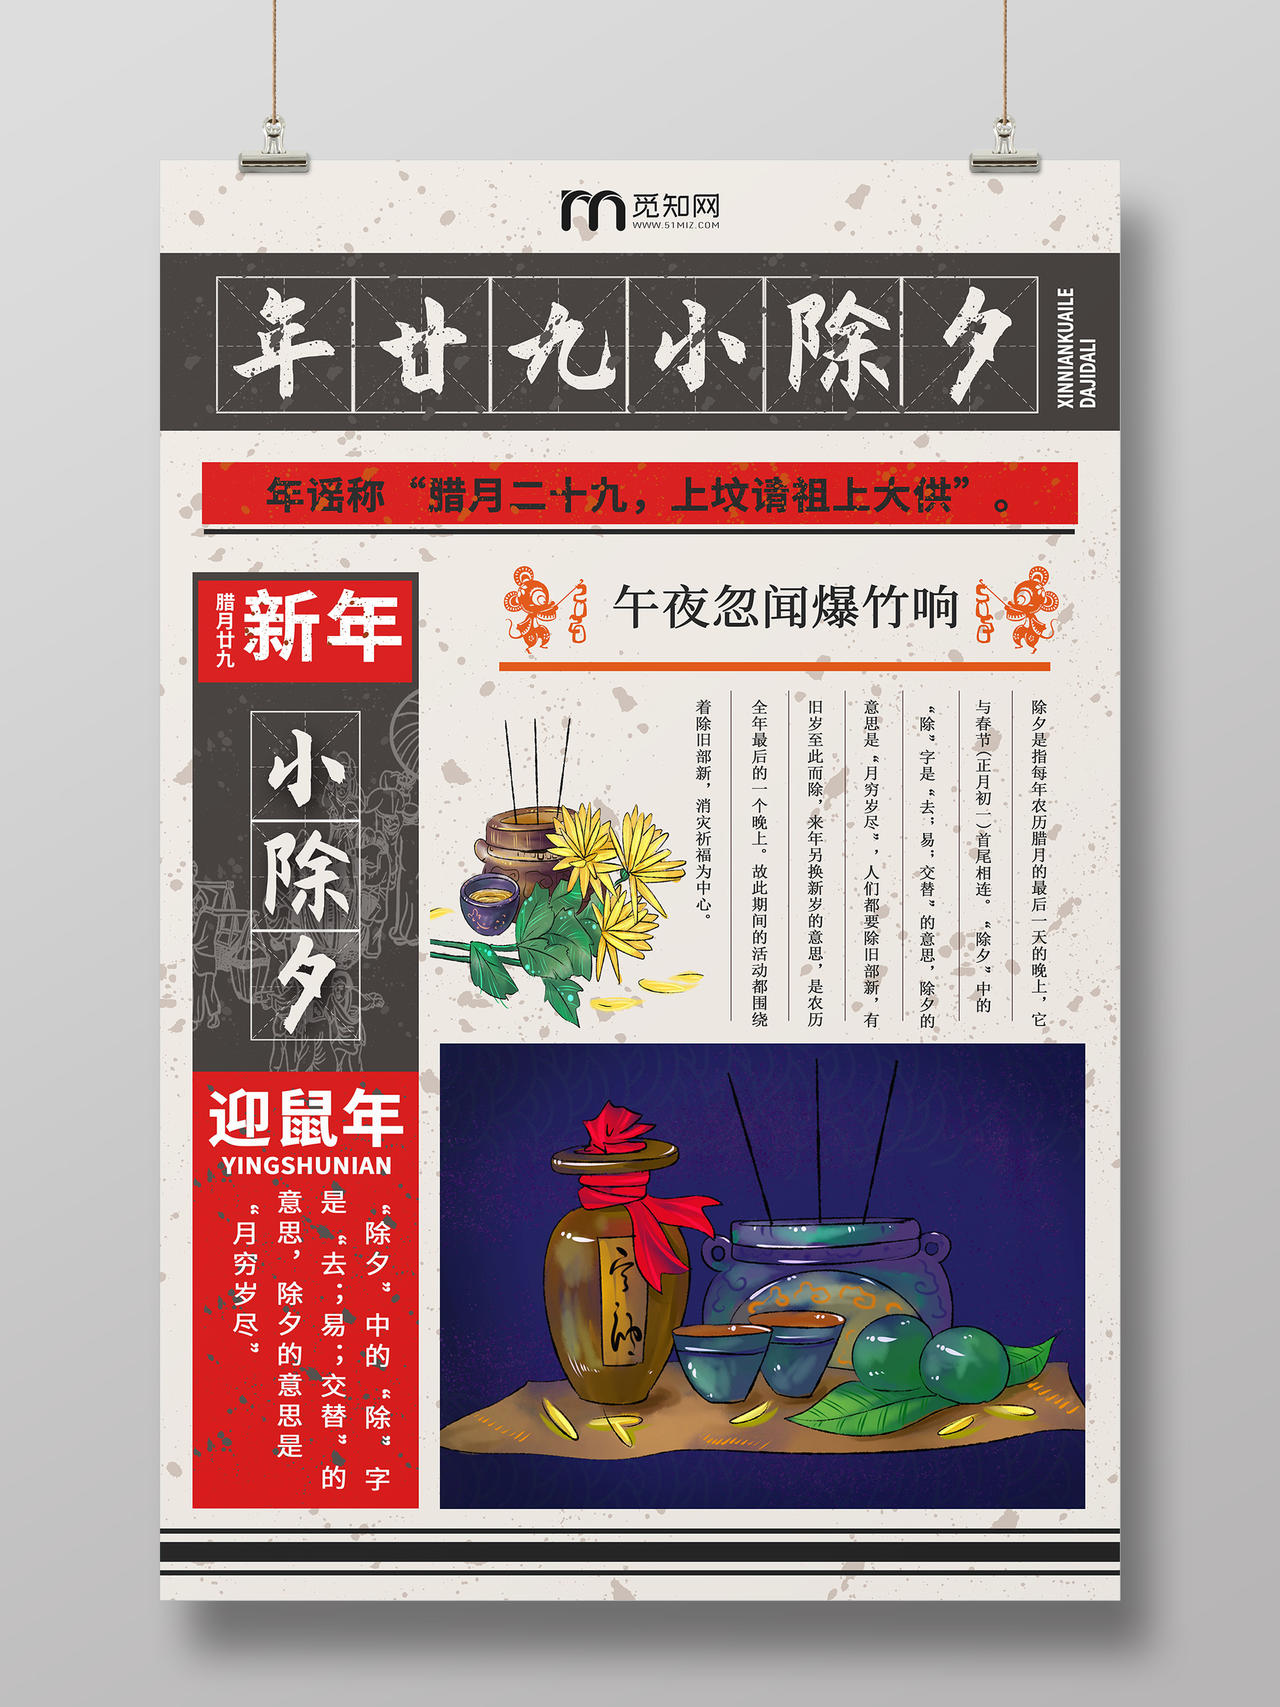 复古风格春节传统习俗大全腊月二十九小年夜海报新年习俗系列图